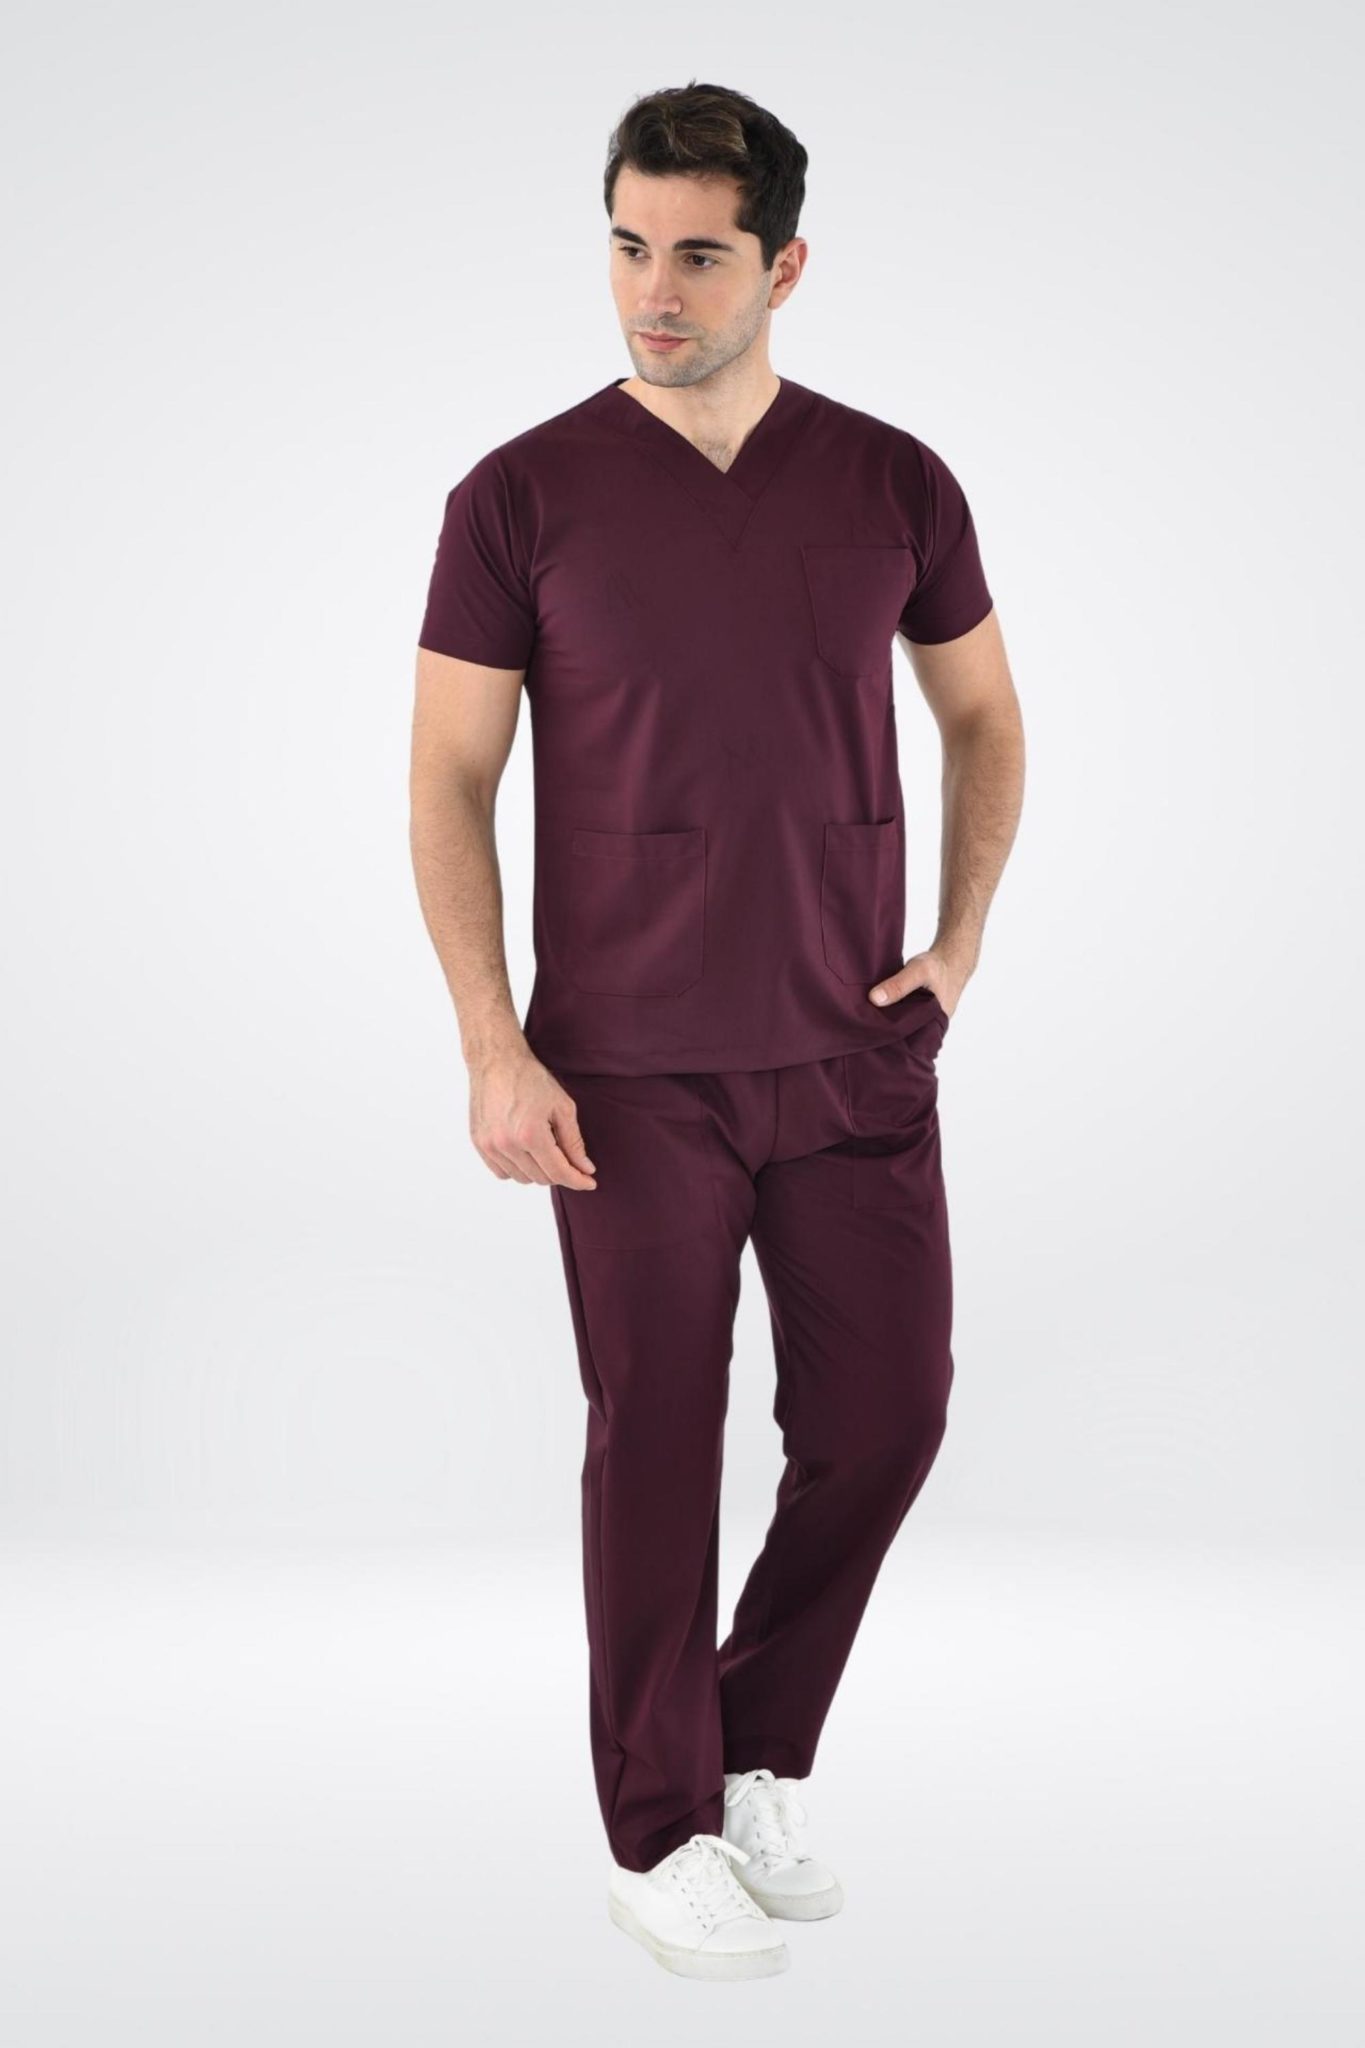 Uniforme médical pour homme en tenue médicale bordeaux dune blouse et dun pantalon